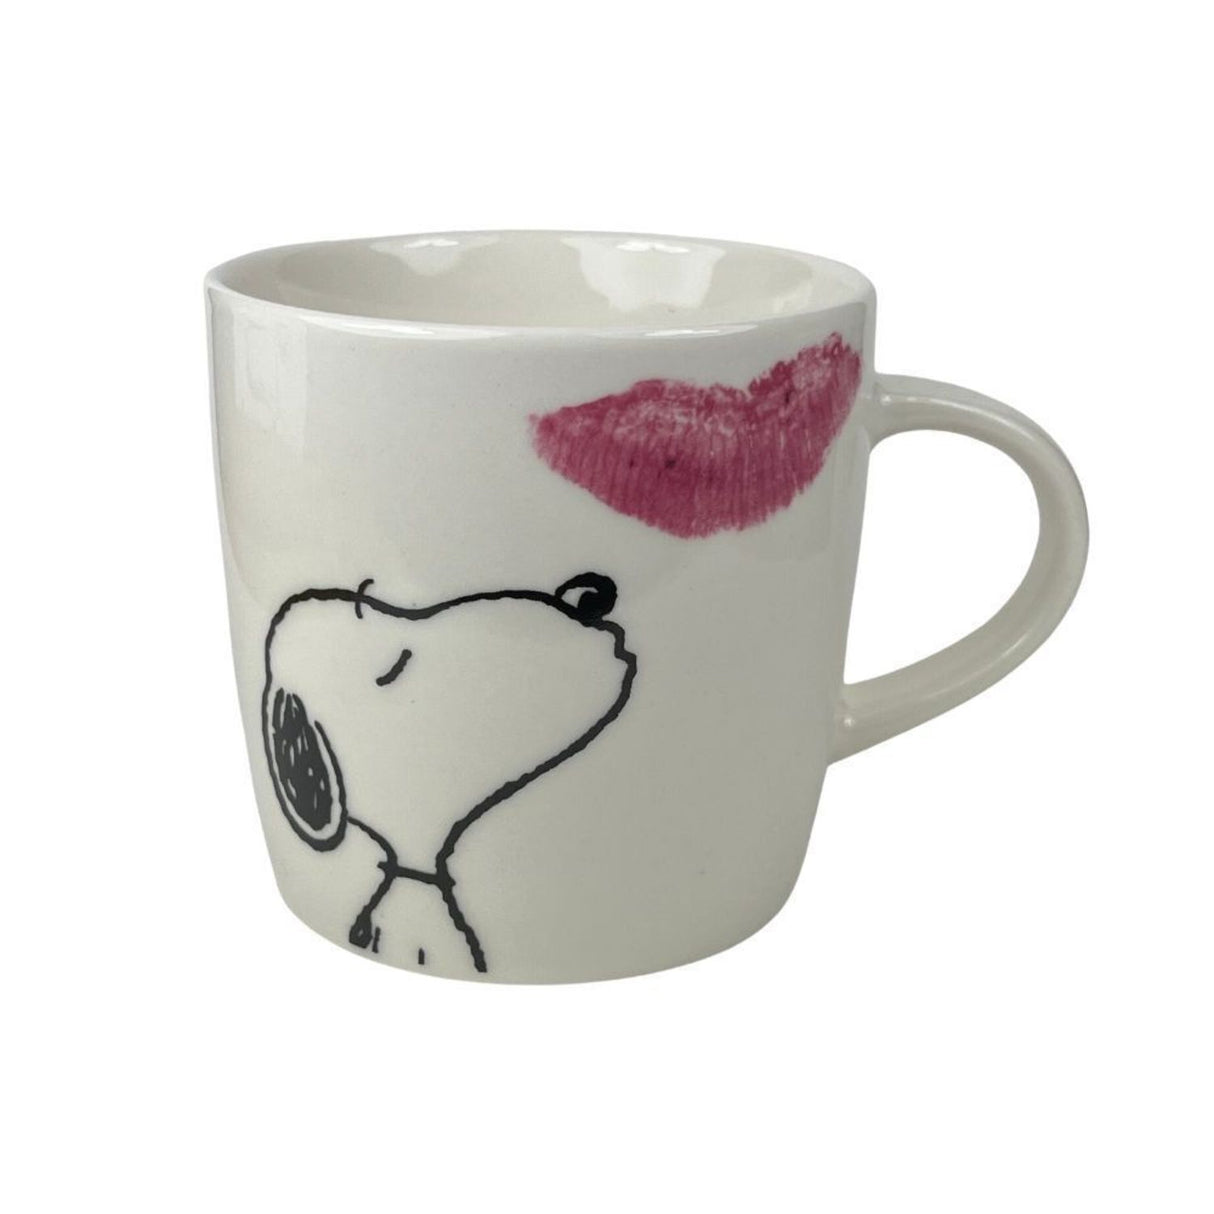 Snoopy - Ein Kuss am Morgen Geschirrset mit Teller, Tasse und Schüssel